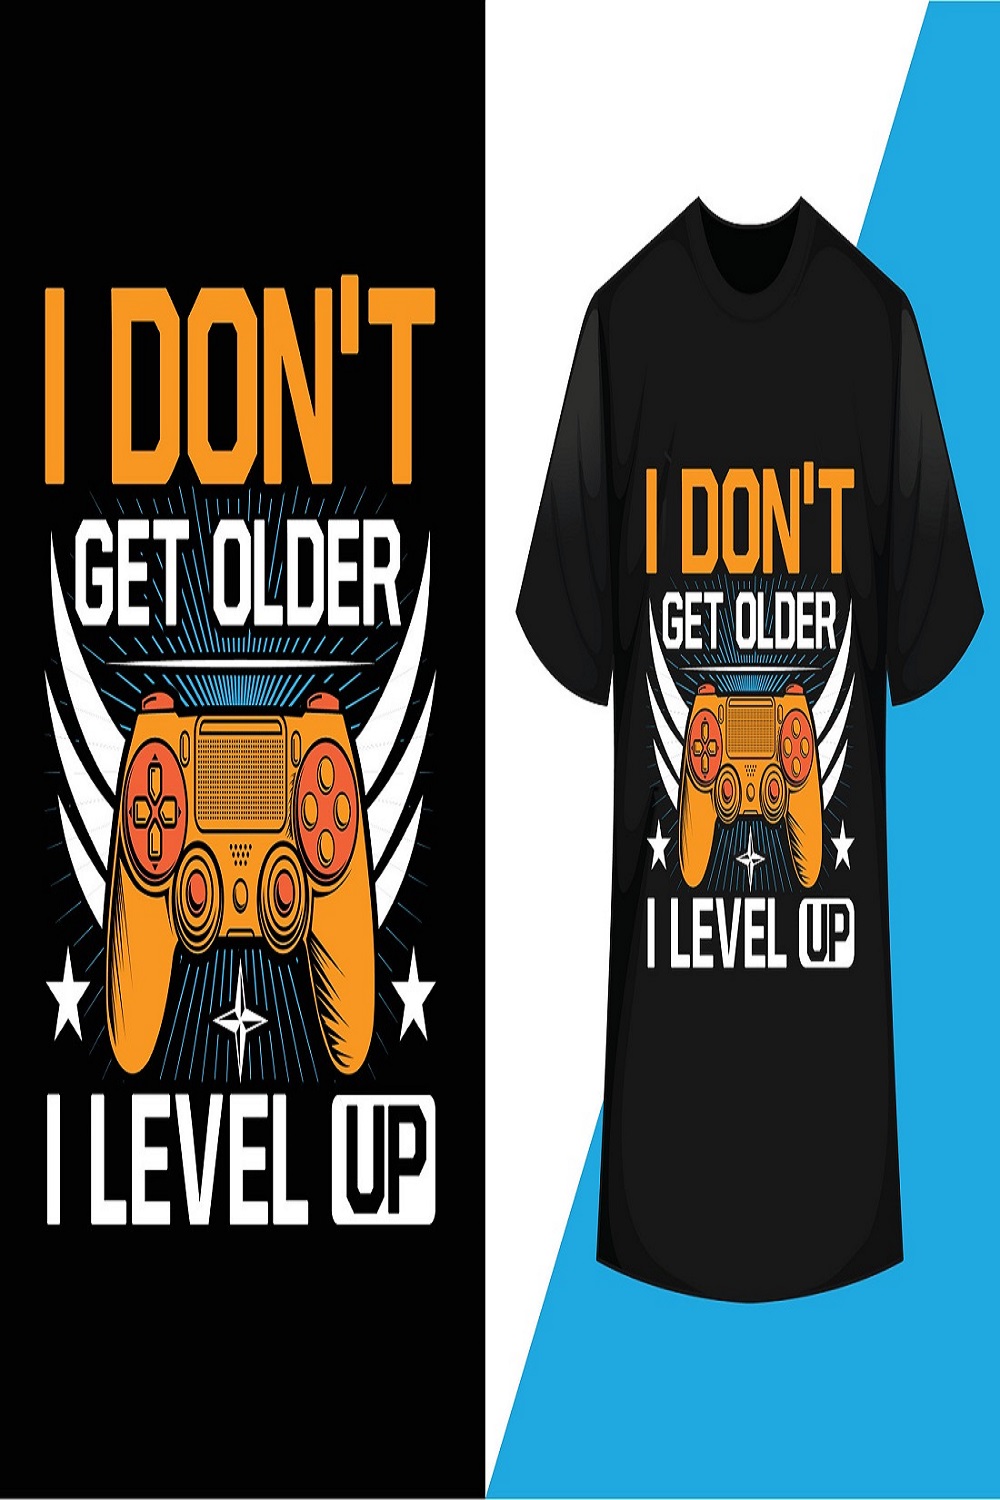 I don't get older i level up gaming t-shirt design vector pinterest preview image.